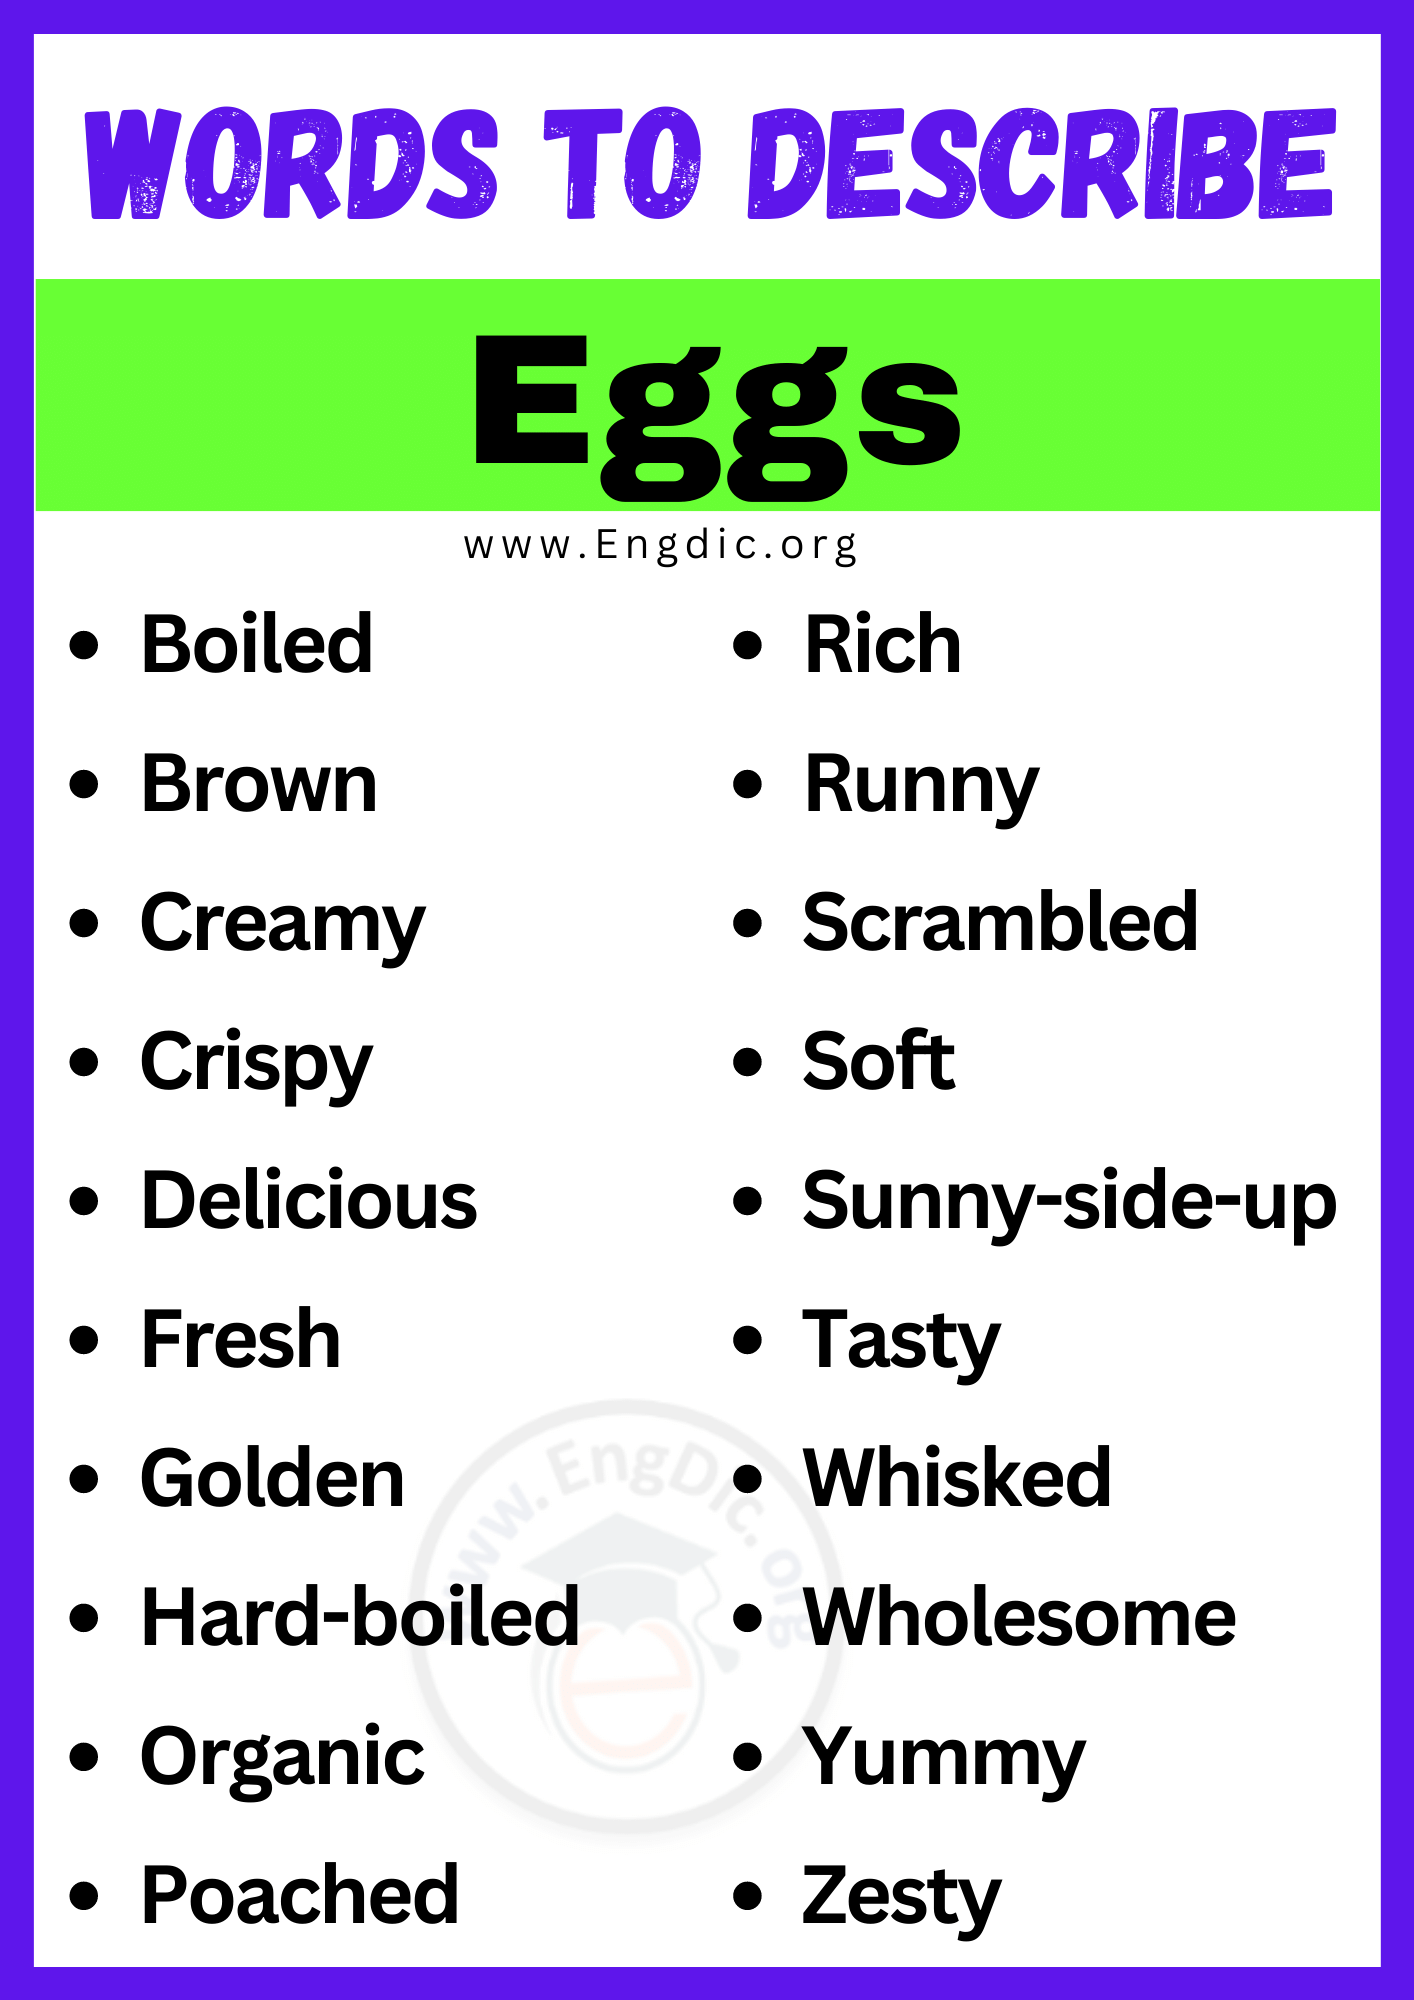 Words to Describe Eggs